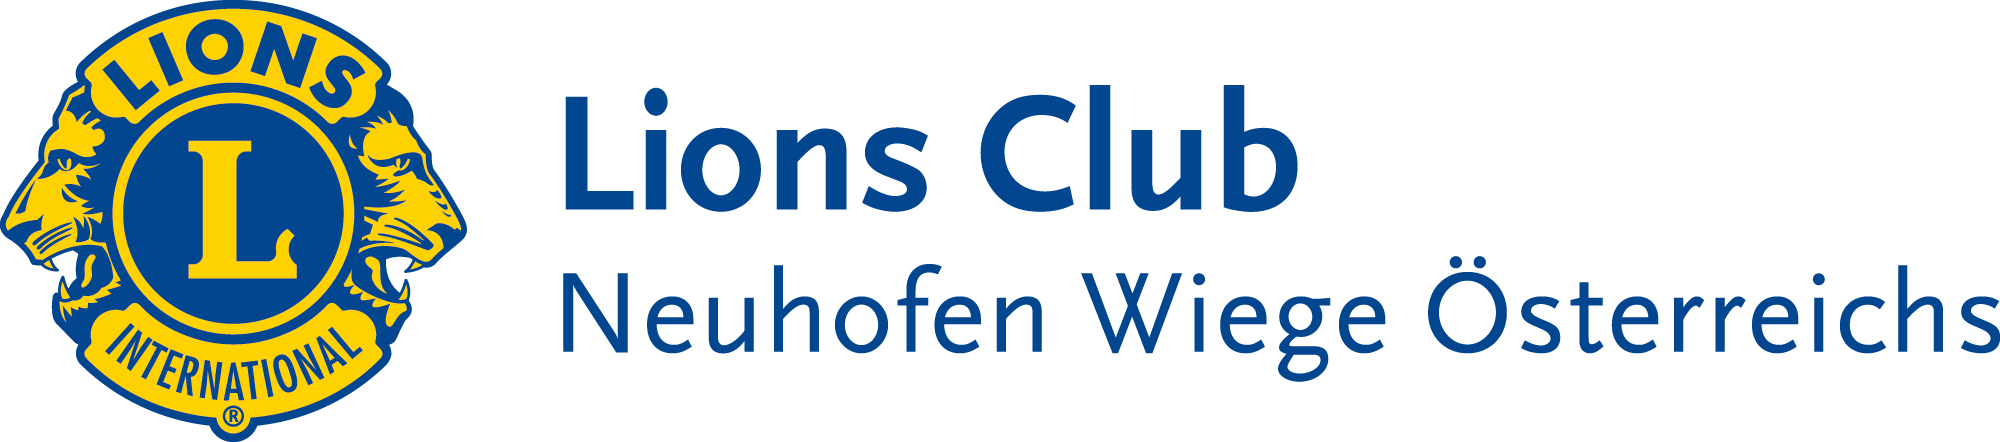 Lions Club Neuhofen Wiege Österreichs Logo quer